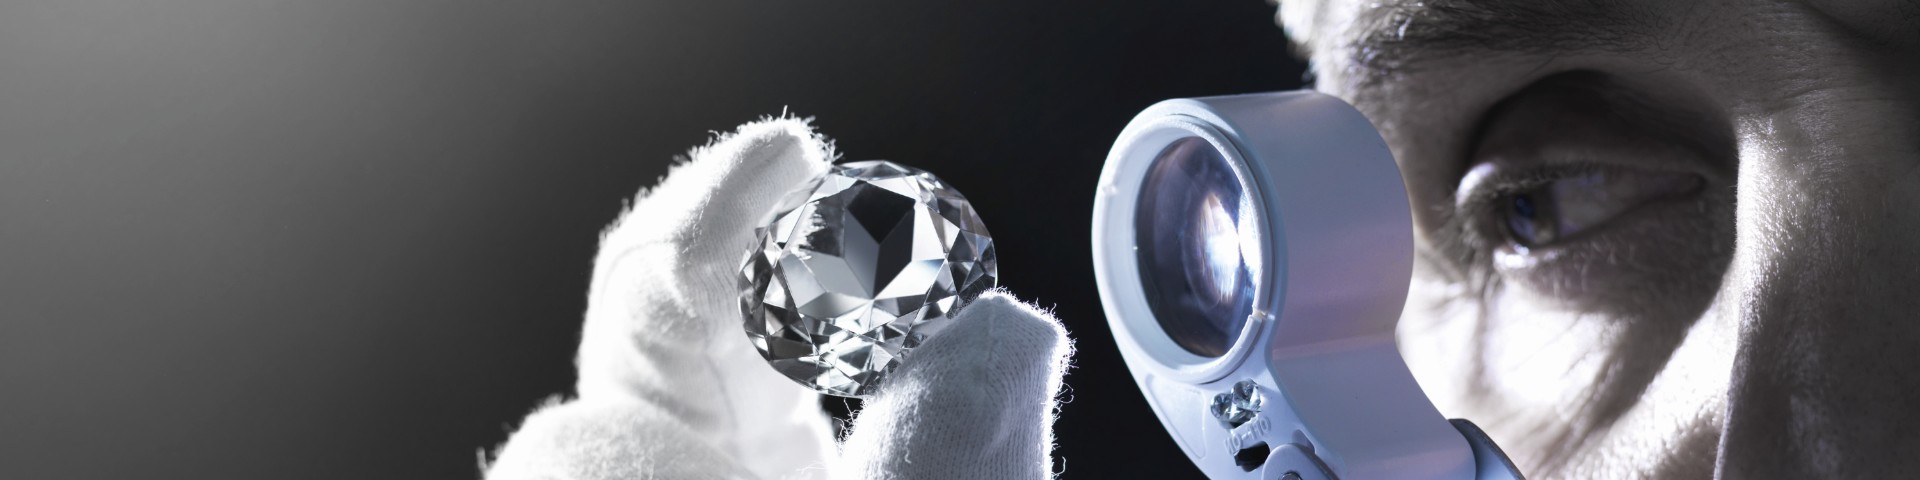 Un hombre examina los diamantes con una lupa.